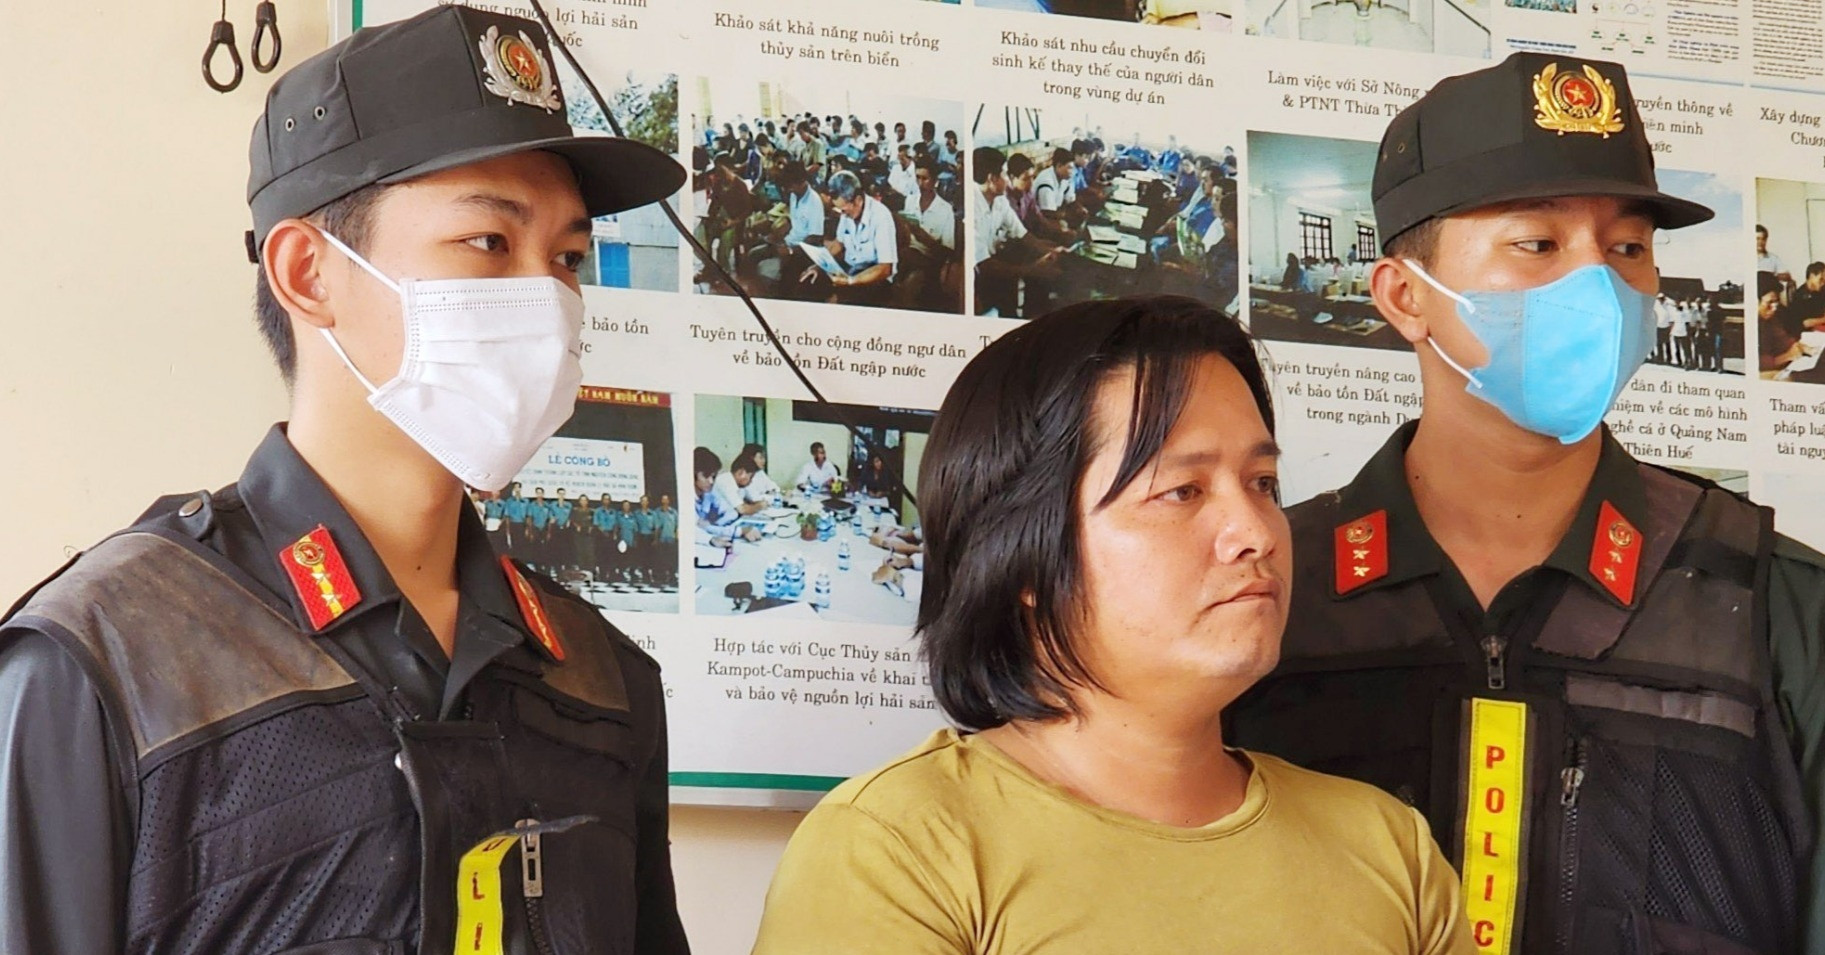 Bắt nhóm giang hồ "Cọp bãi bổn" vụ giết người ở Phú Quốc